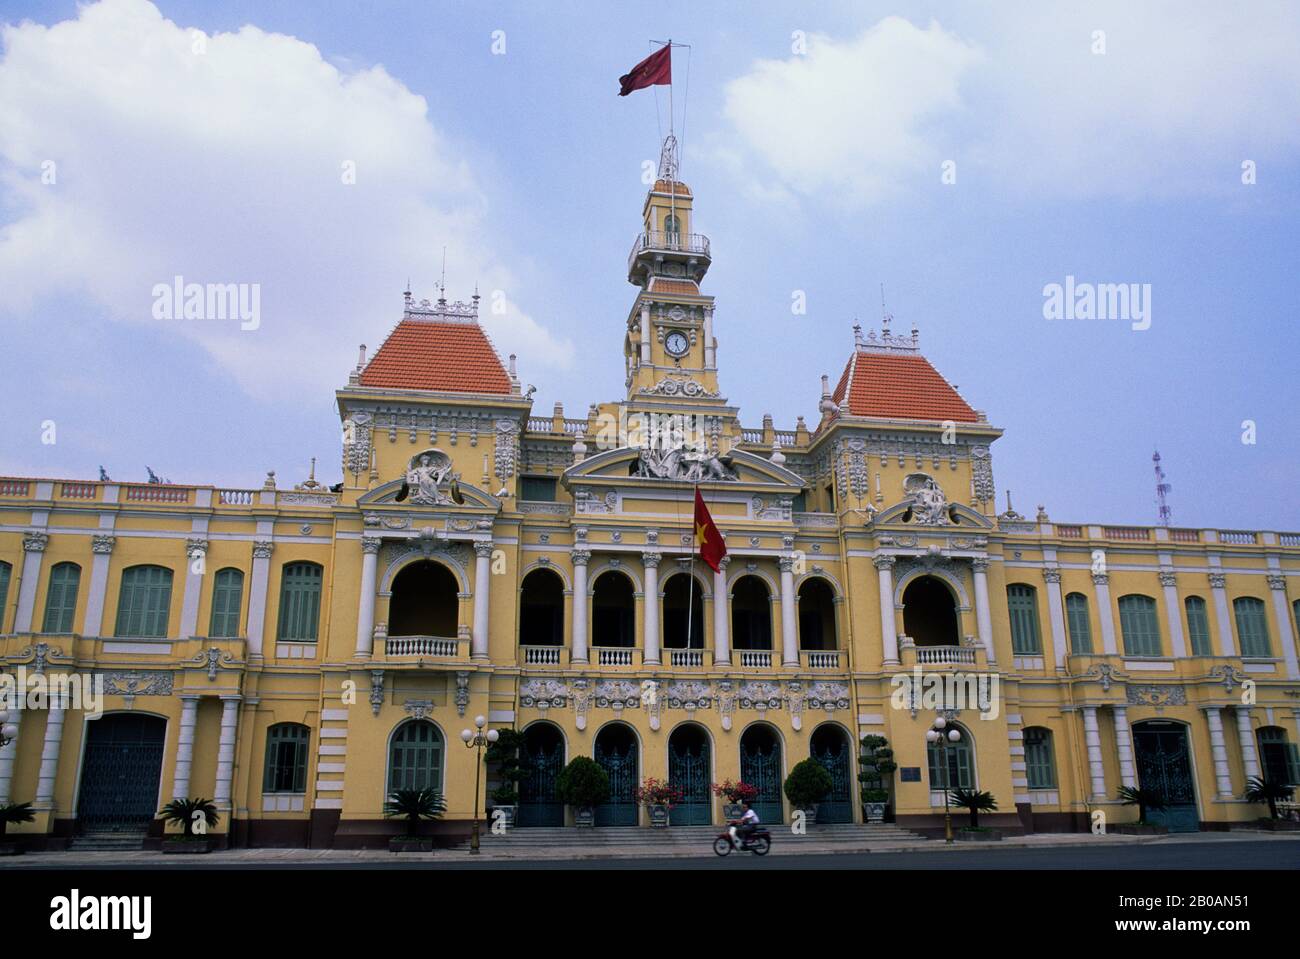 VIETNAM, HO CHI MINH CITY (SAIGON), MUNICIPIO, ARCHITETTURA IN STILE COLONIALE FRANCESE Foto Stock